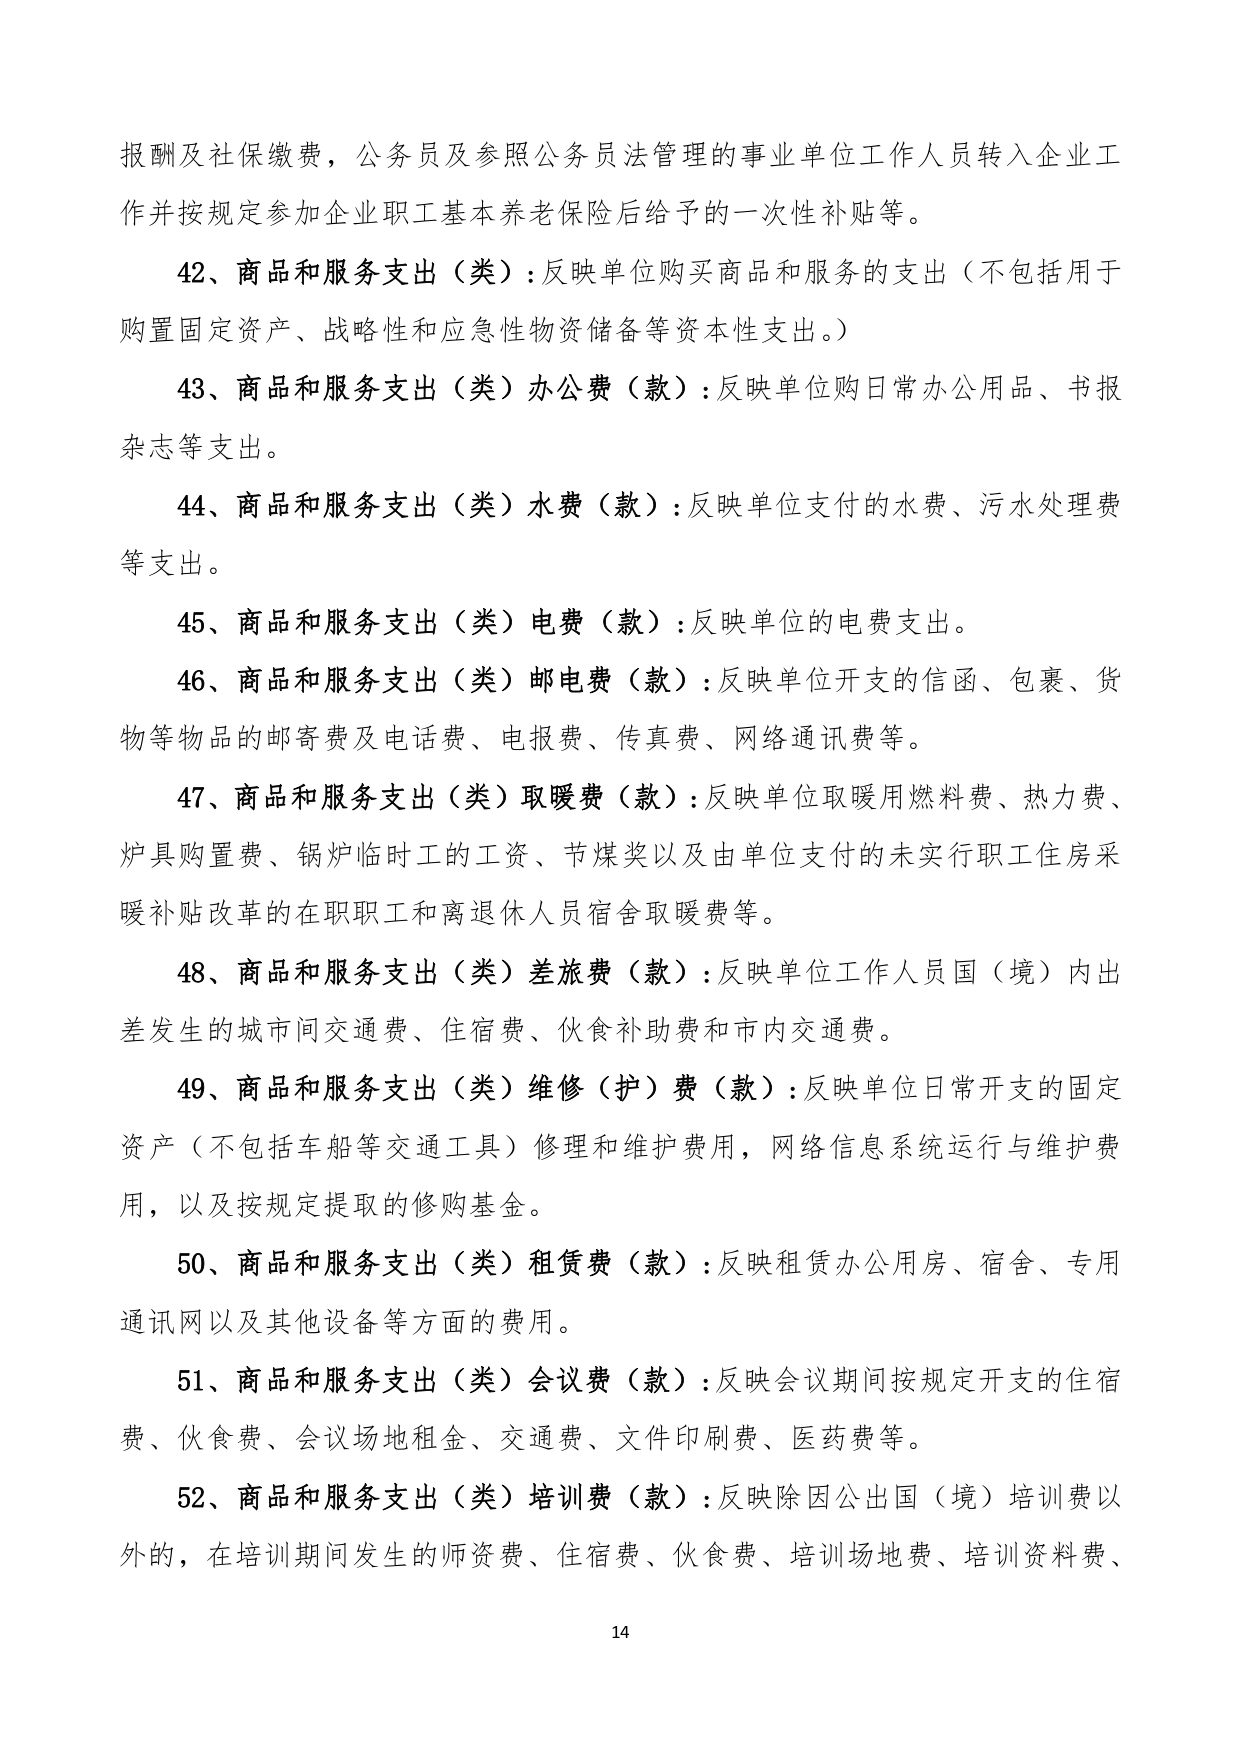 甘肃省广播电视学校2023年单位预算公开报告_page-0015.jpg